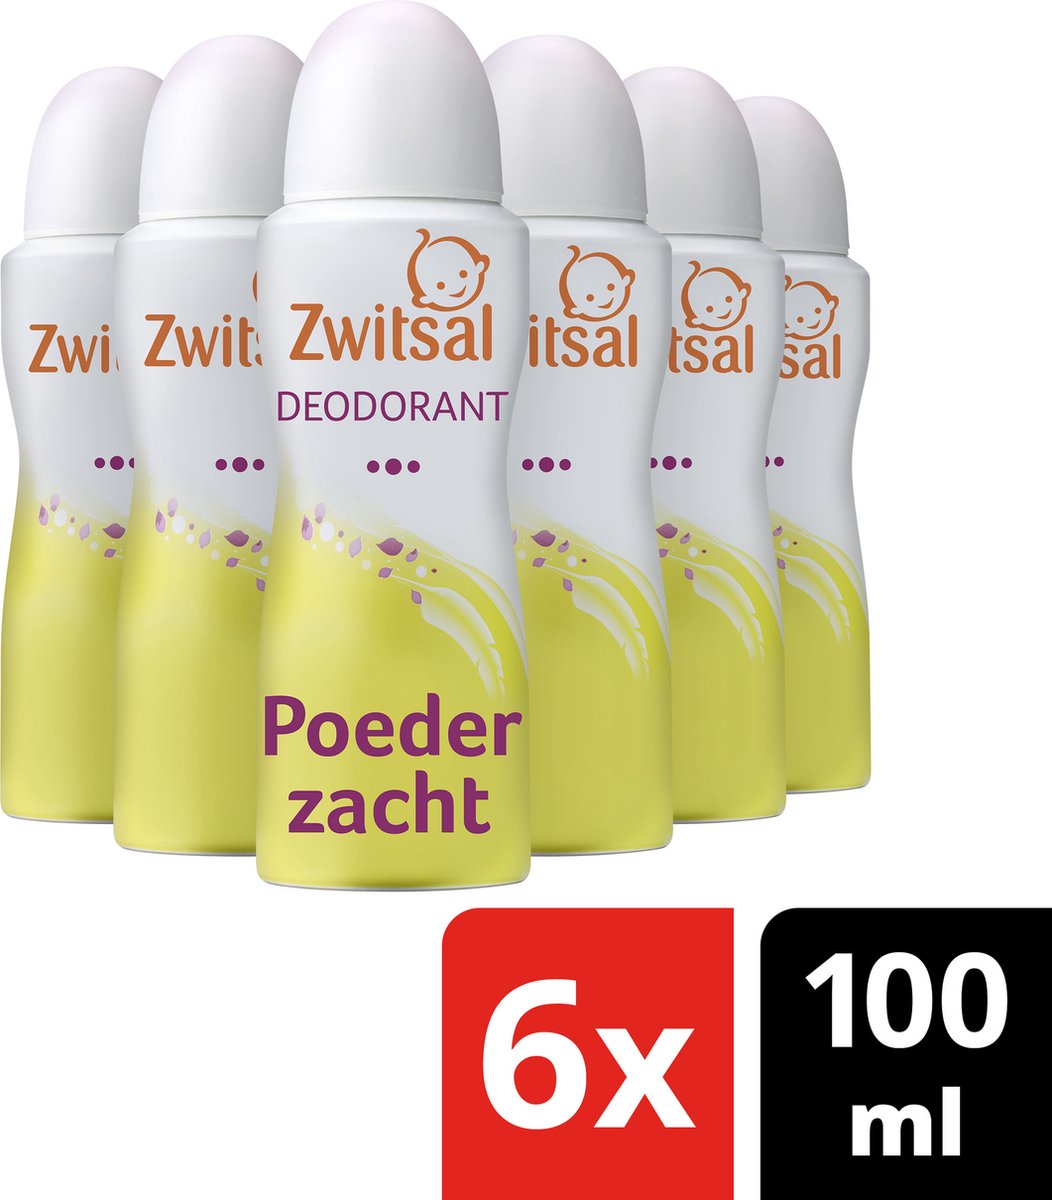 Zwitsal Poederzacht Deodorant - 6 x 100ml - Voordeelverpakking - Zwitsal